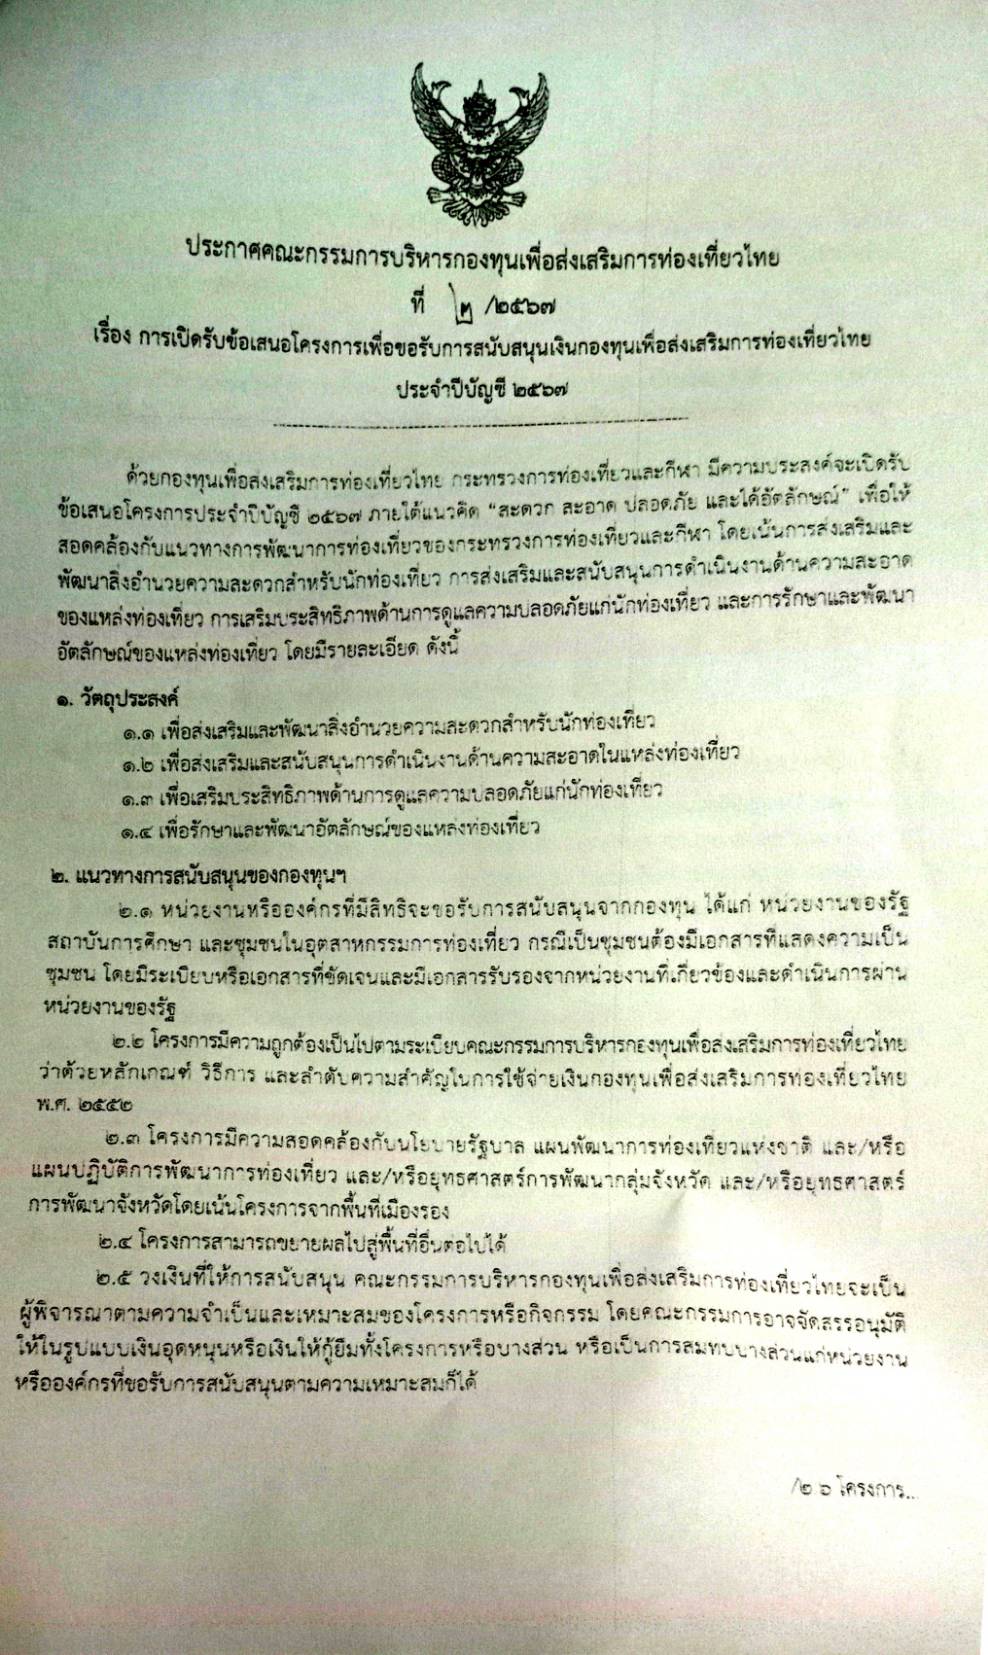 สำนักงานการท่องเที่ยวและกีฬาจังหวัดพระนครศรีอยุธยา ขอเปิดรับการเสนอโครงการของกองทุนเพื่อส่งเสริมการท่องเที่ยวไทย ประจำปีบัญชี 2567